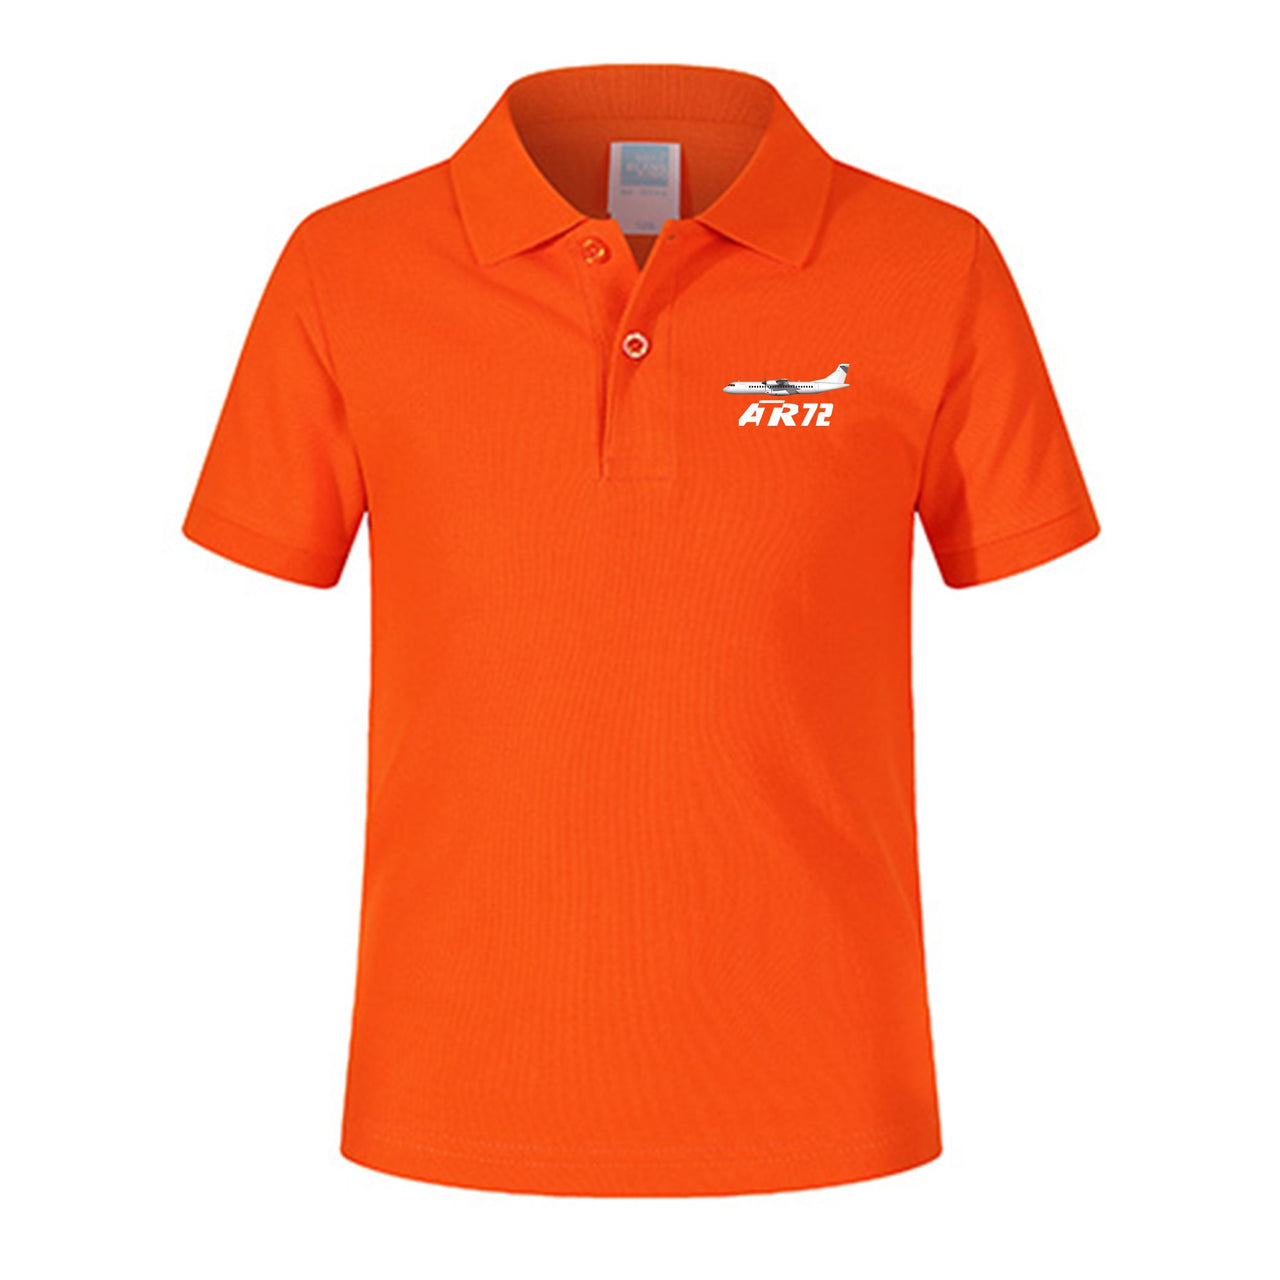 The ATR72 Designed Children Polo T-Shirts